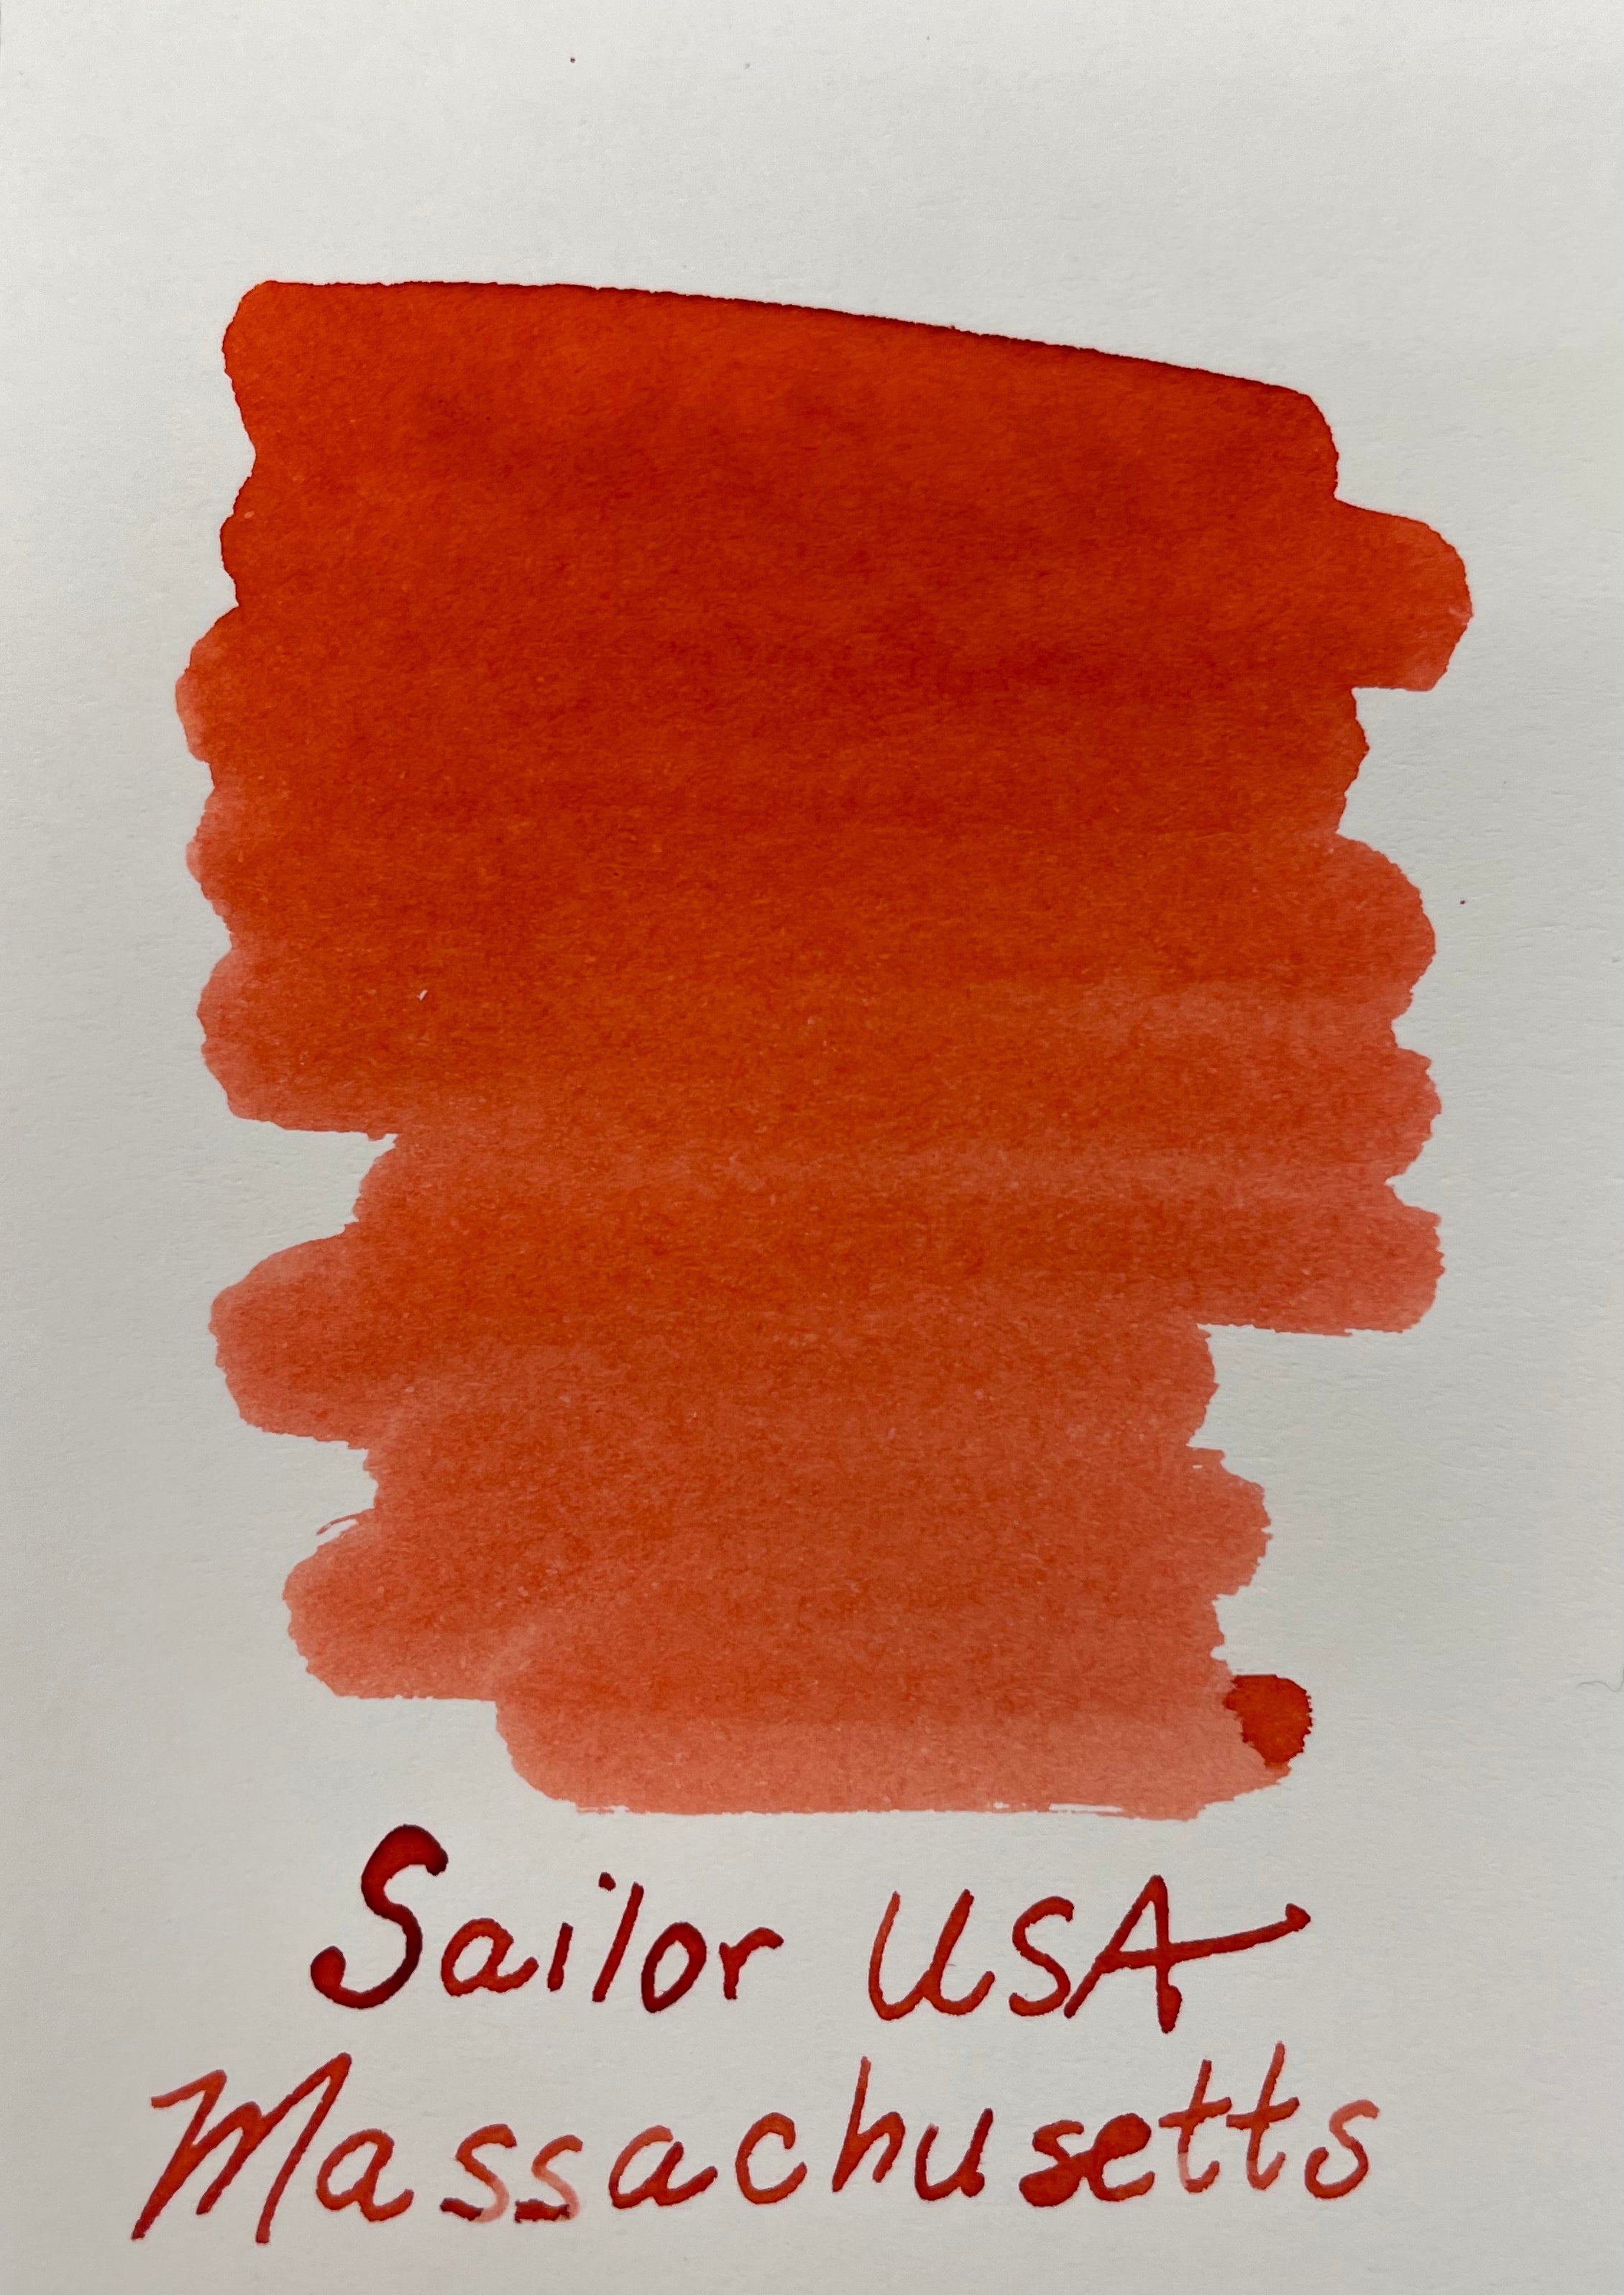 Sailor Bottled Ink - USA State - Massachusetts - 20ml-Pen Boutique Ltd